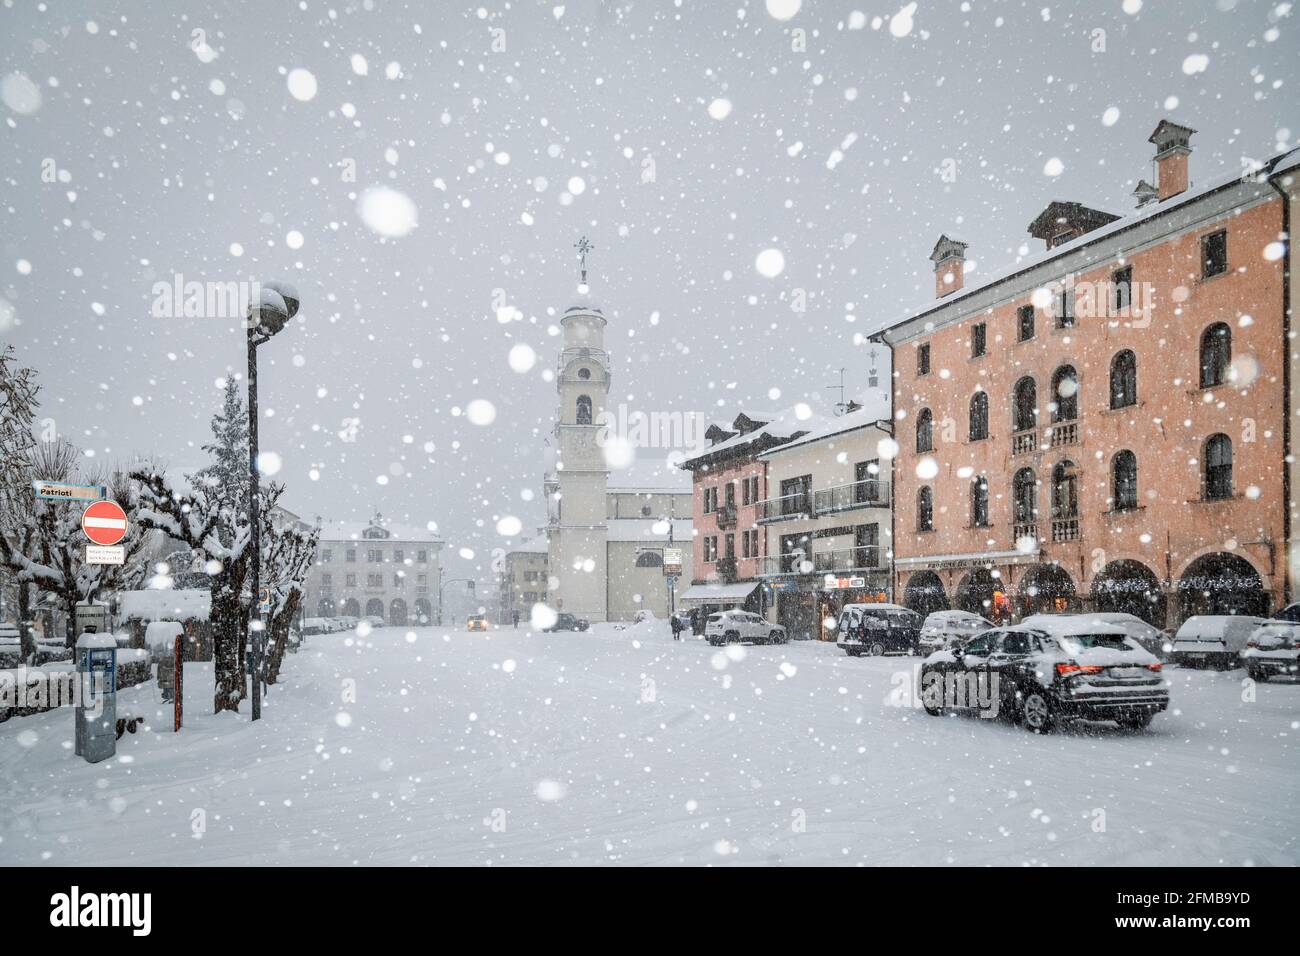 agordo, le centre-ville sous une forte chute de neige, province de Belluno, Vénétie, Italie Banque D'Images